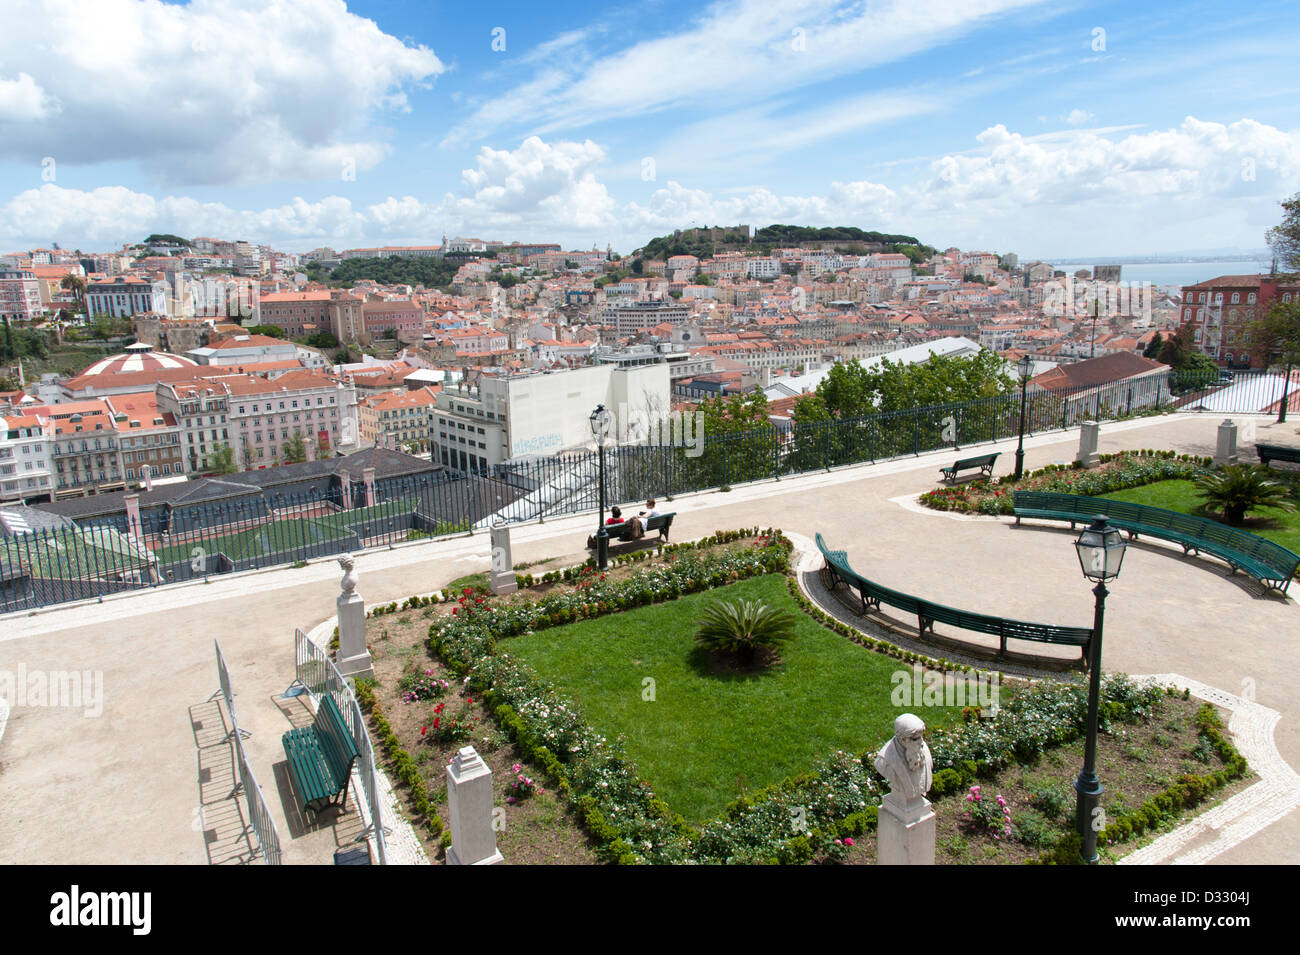 Views across the city from Jardim de Sao Pedro de Alcantara, Lisbon, Portugal Stock Photo